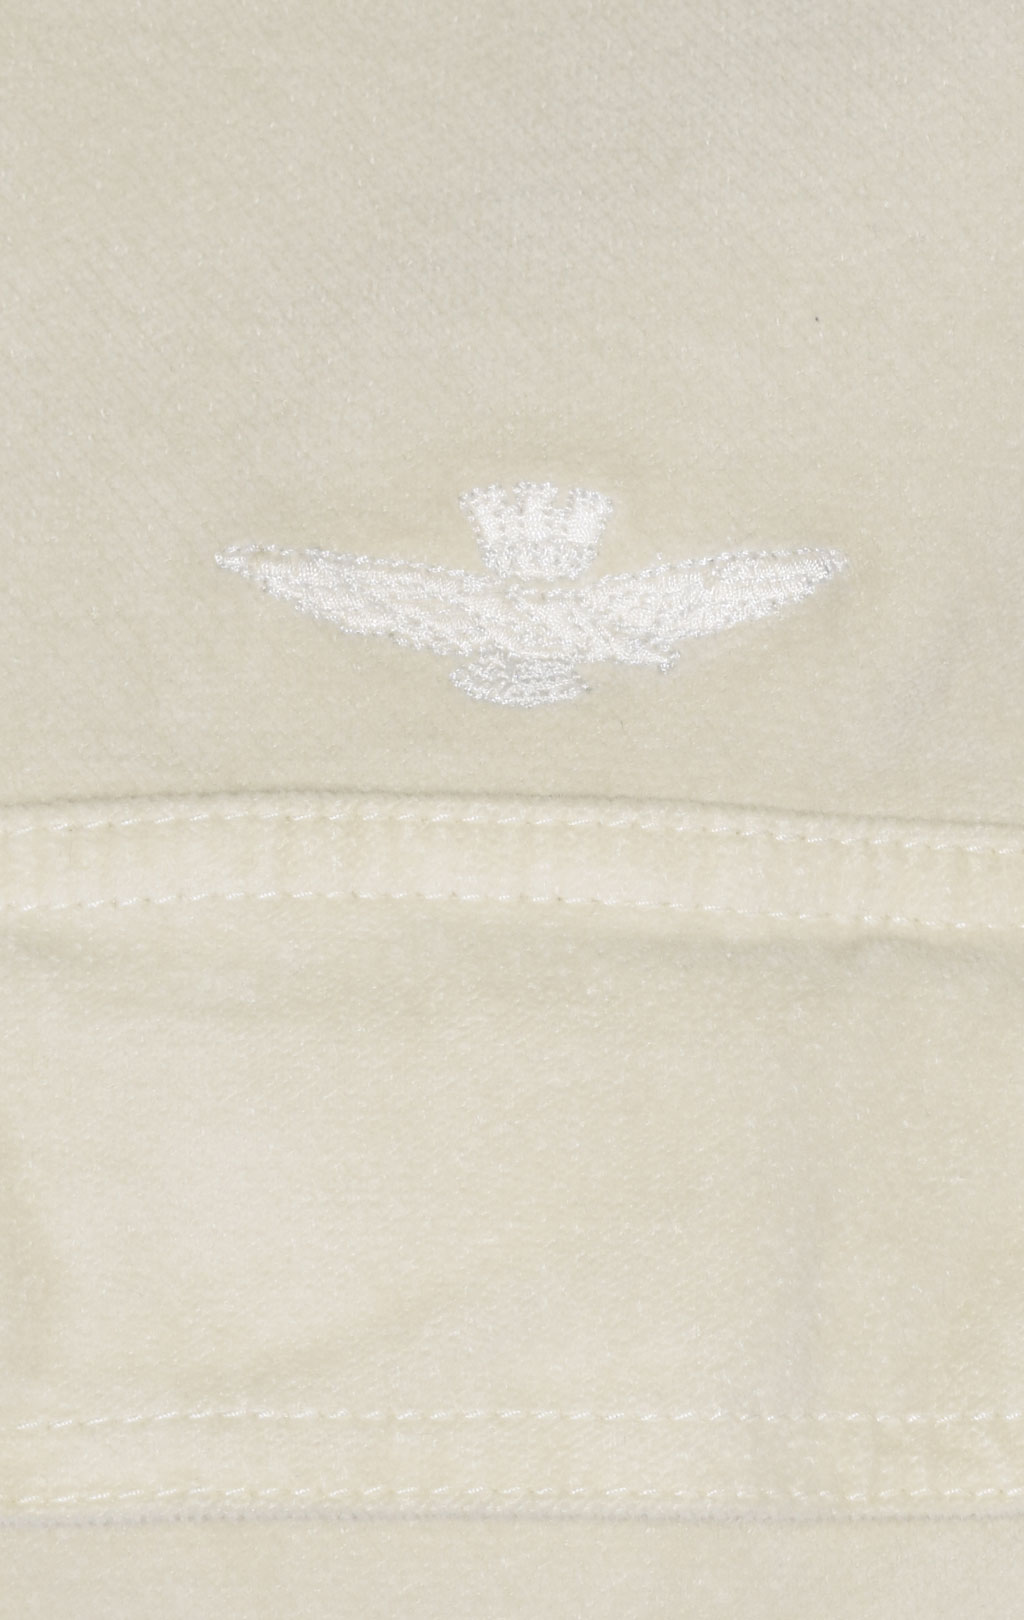 Куртка-рубашка AERONAUTICA MILITARE FW 23/24 m/AL ice palace (AC 013) 